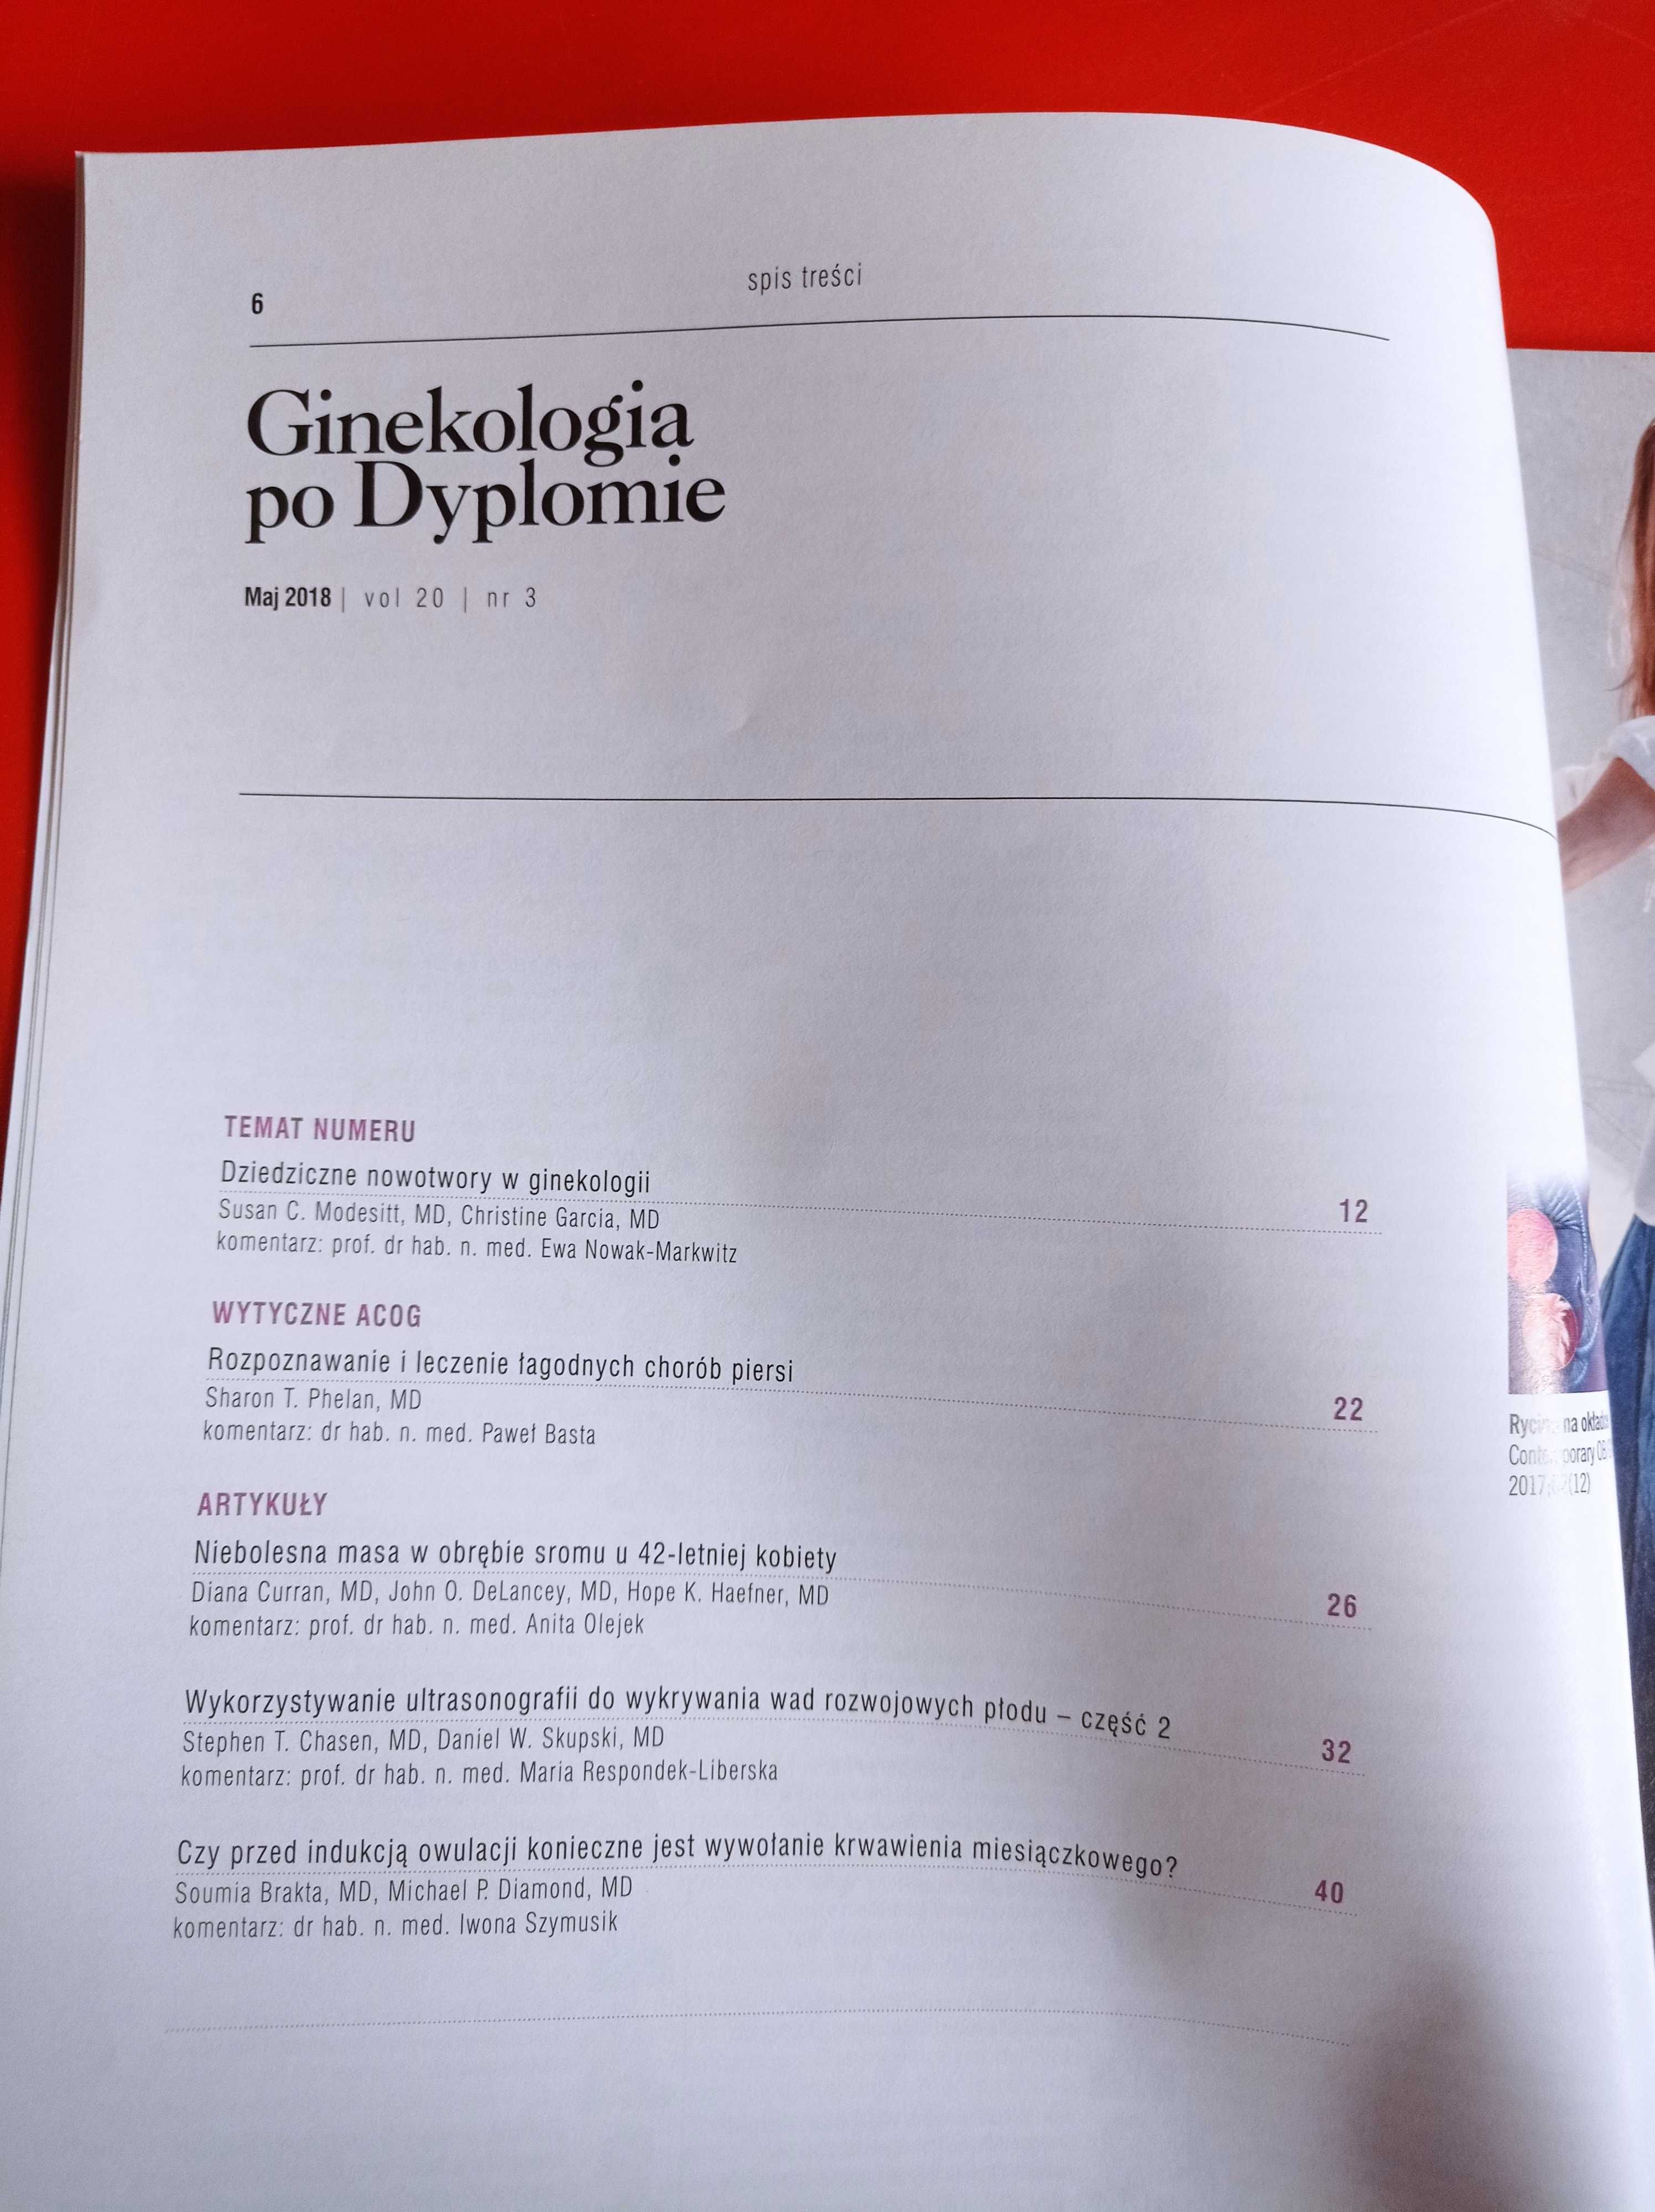 Ginekologia po dyplomie, nr 3, tom 20, maj 2018